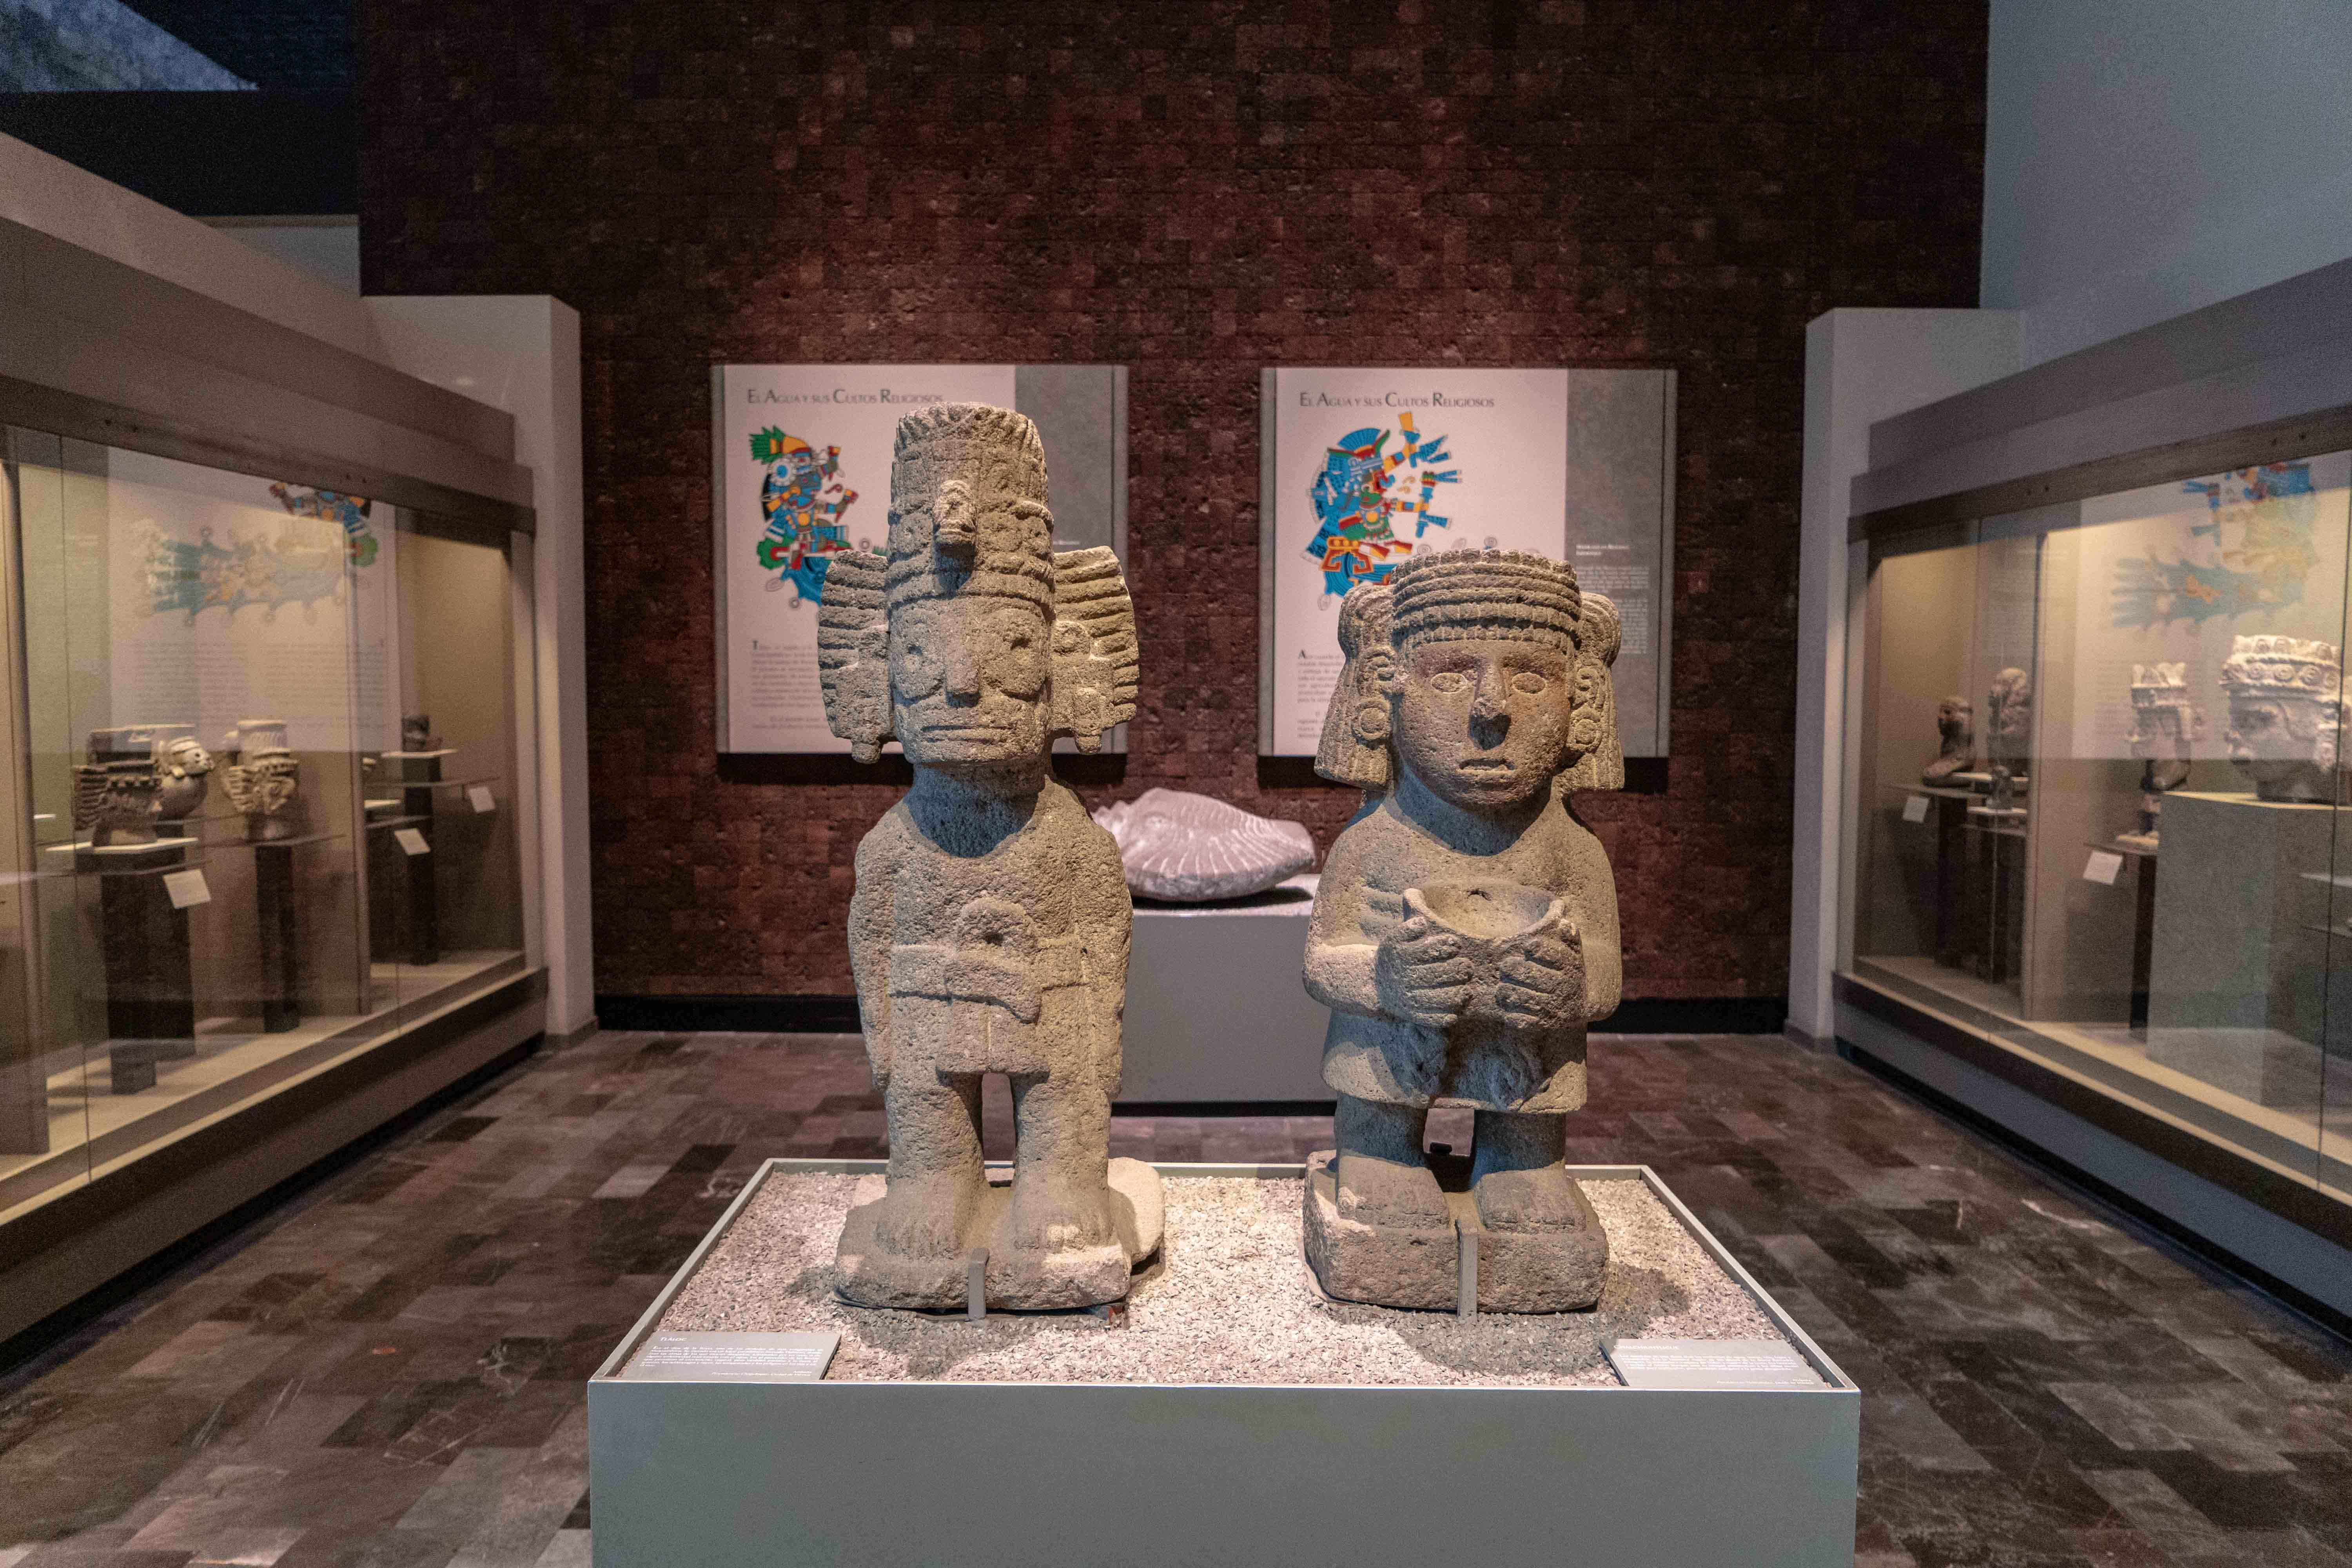 Le Museo de Antropologia de Mexico City est le musée le plus visité de la ville. Une étape importante pour comprendre l'histoire et les cultures mexicaines.